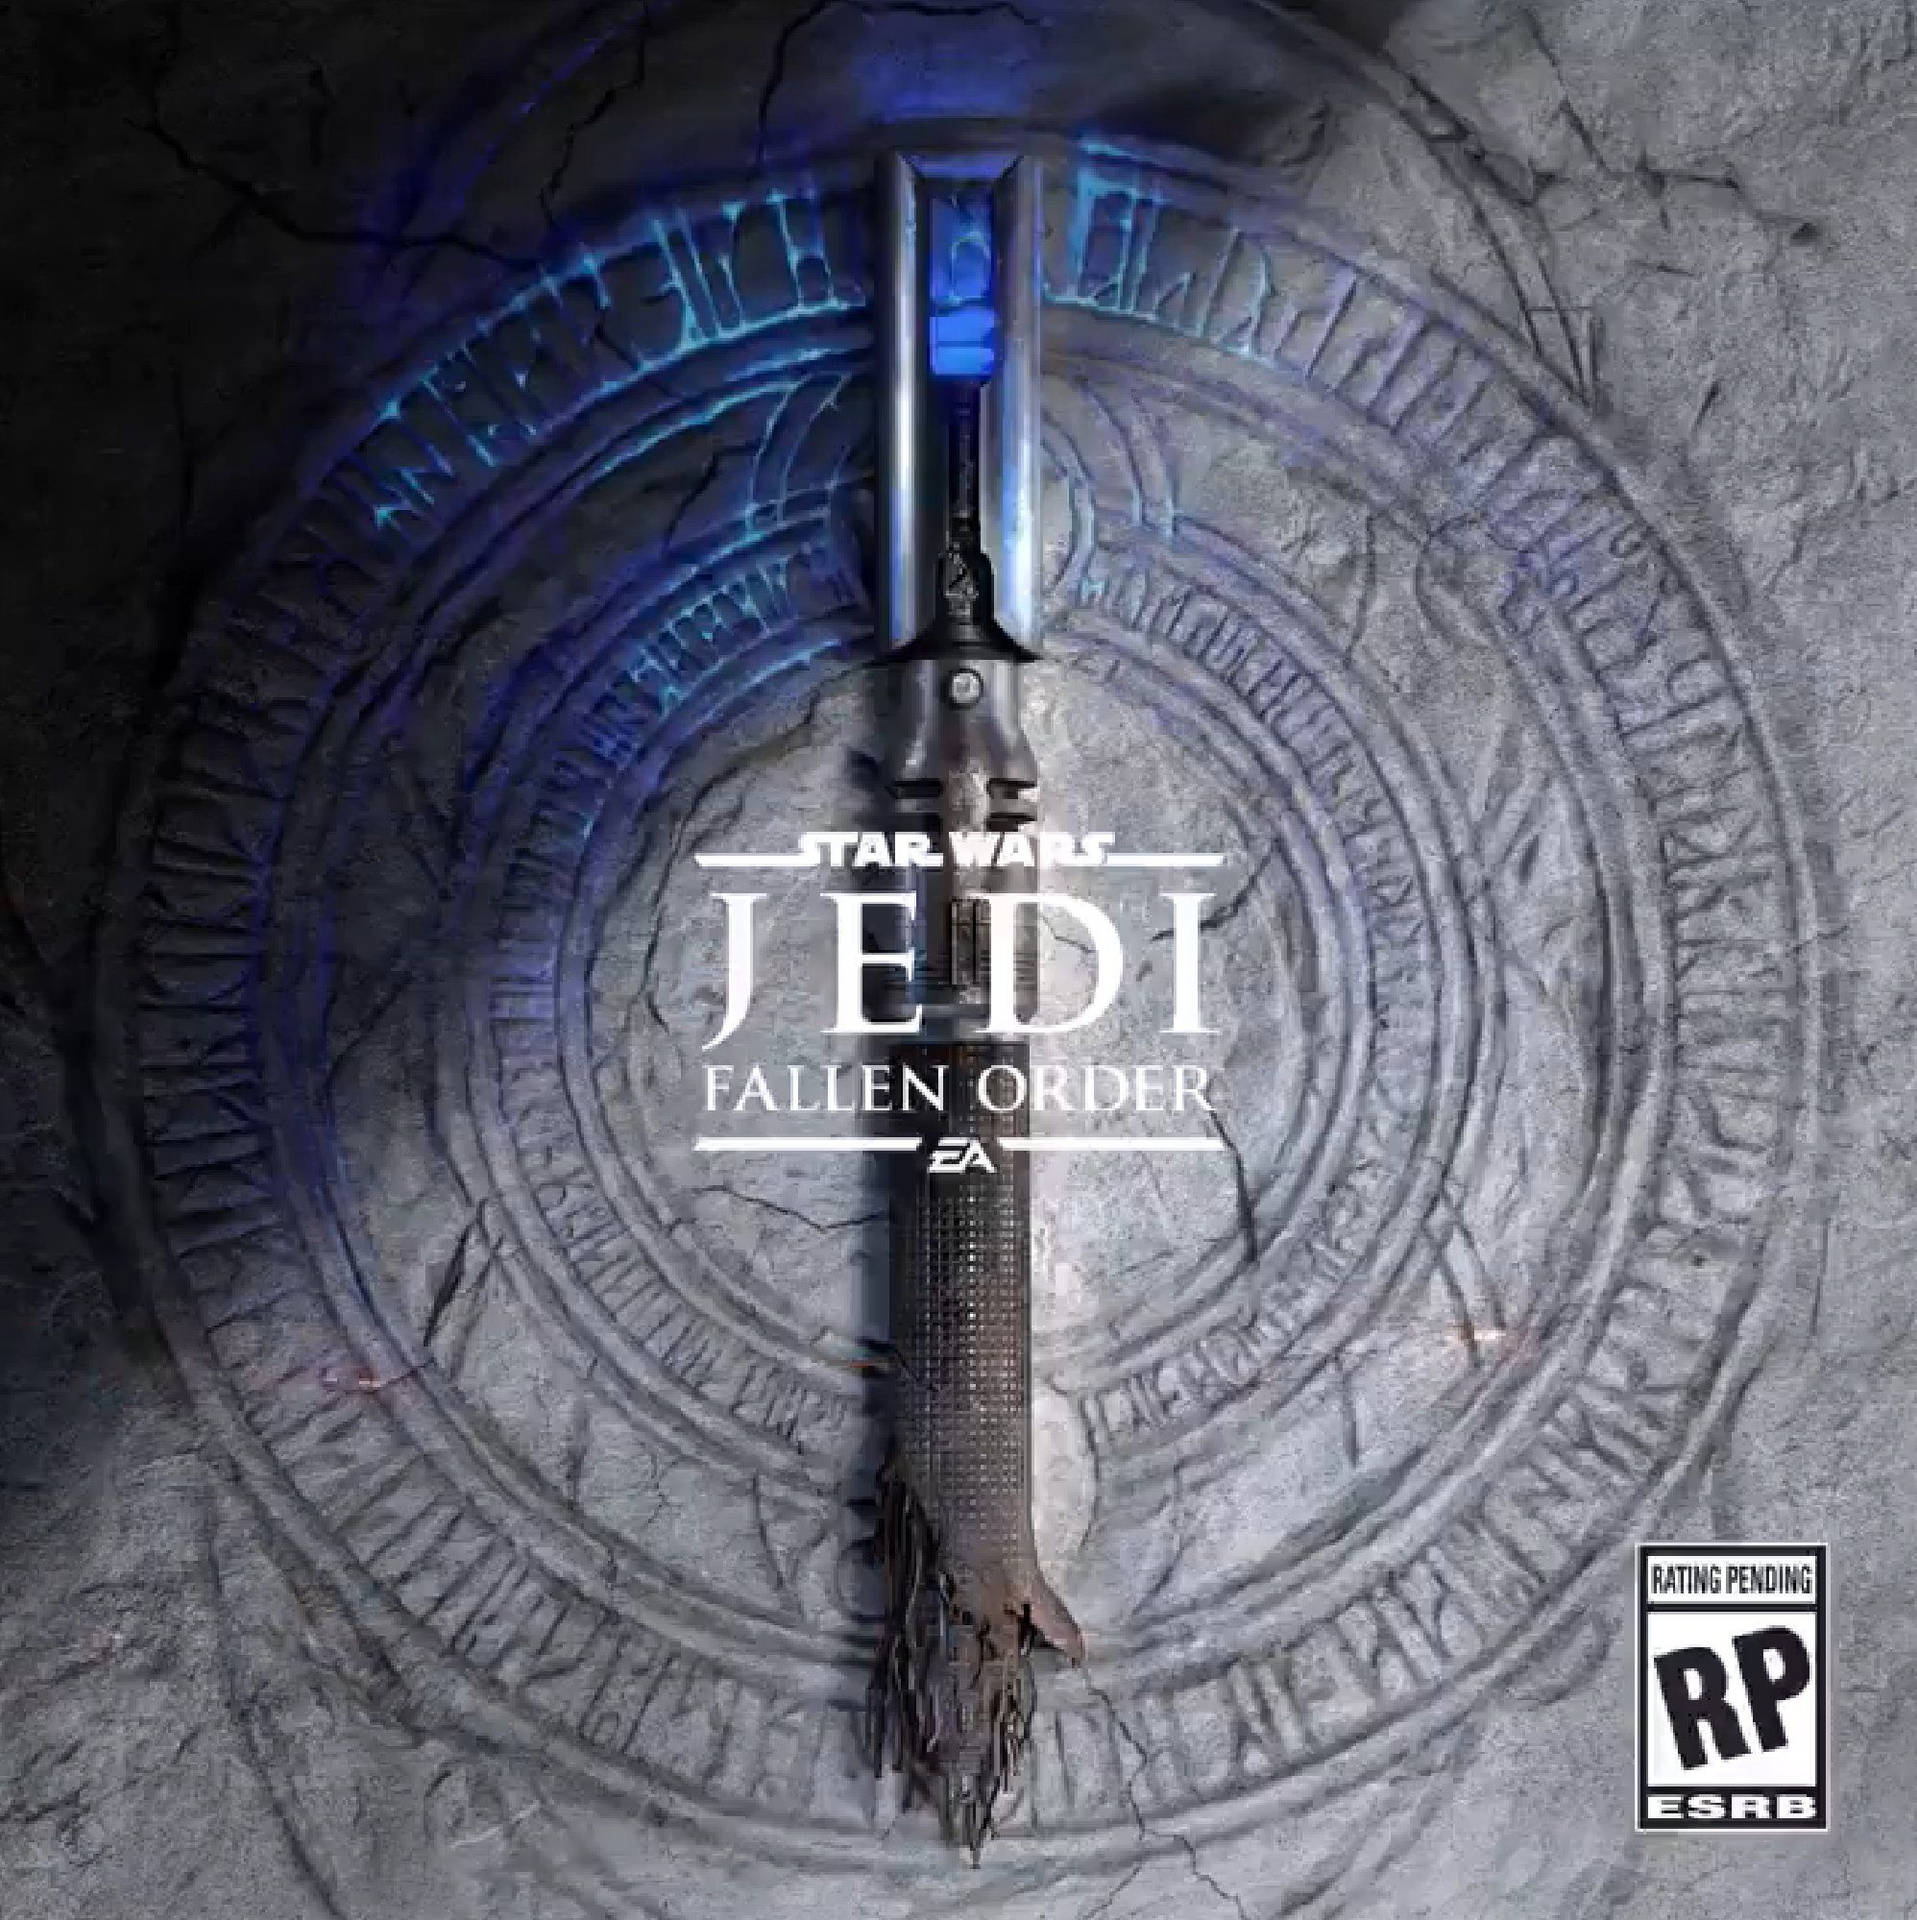 Star Wars Jedi: Fallen Order Teaser Background